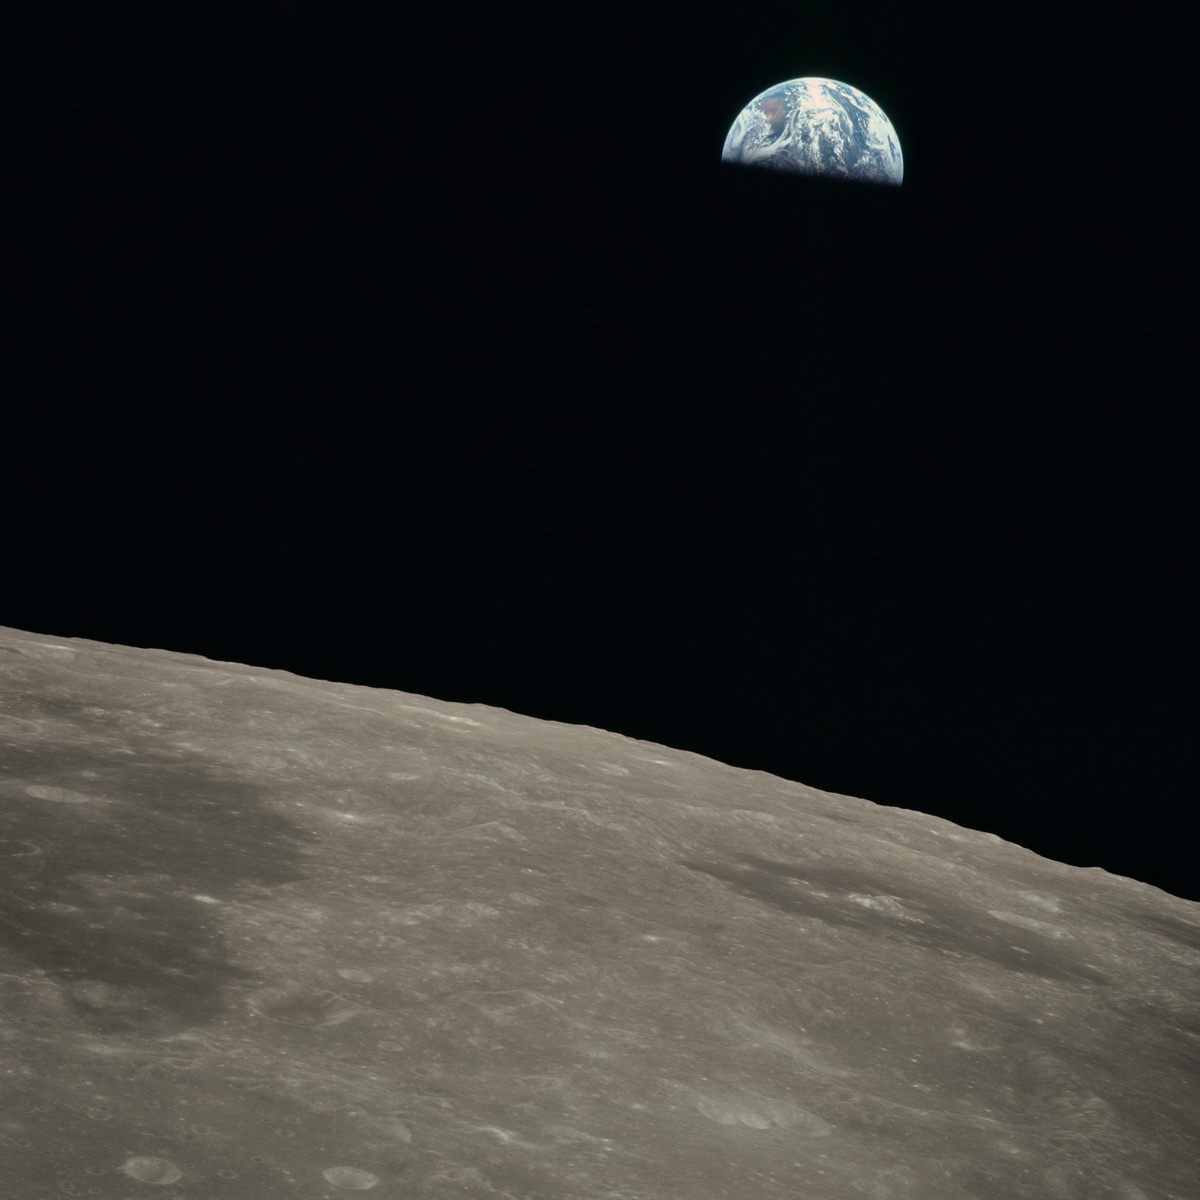 Аполлон-11 на околунной орбите перед стартом к Земле